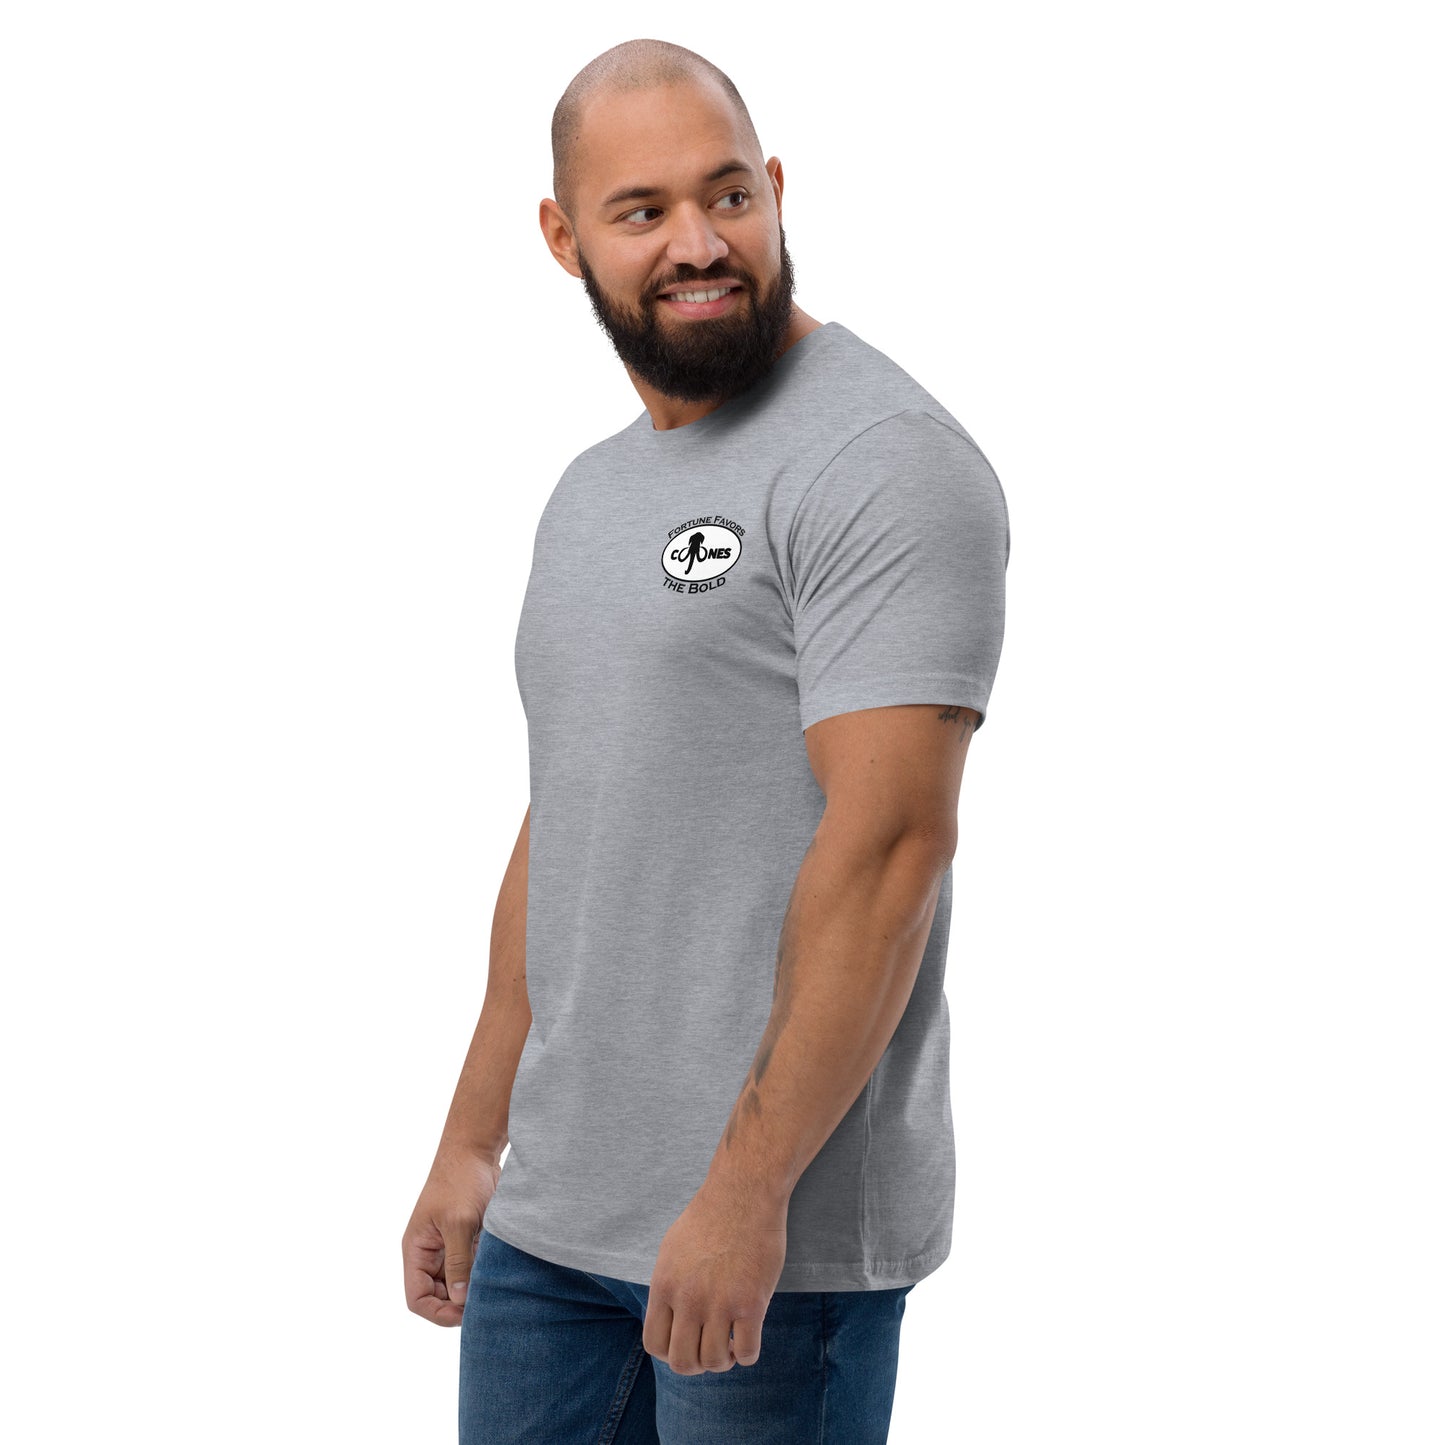 Cojones Spine (Short Sleeve T-shirt)